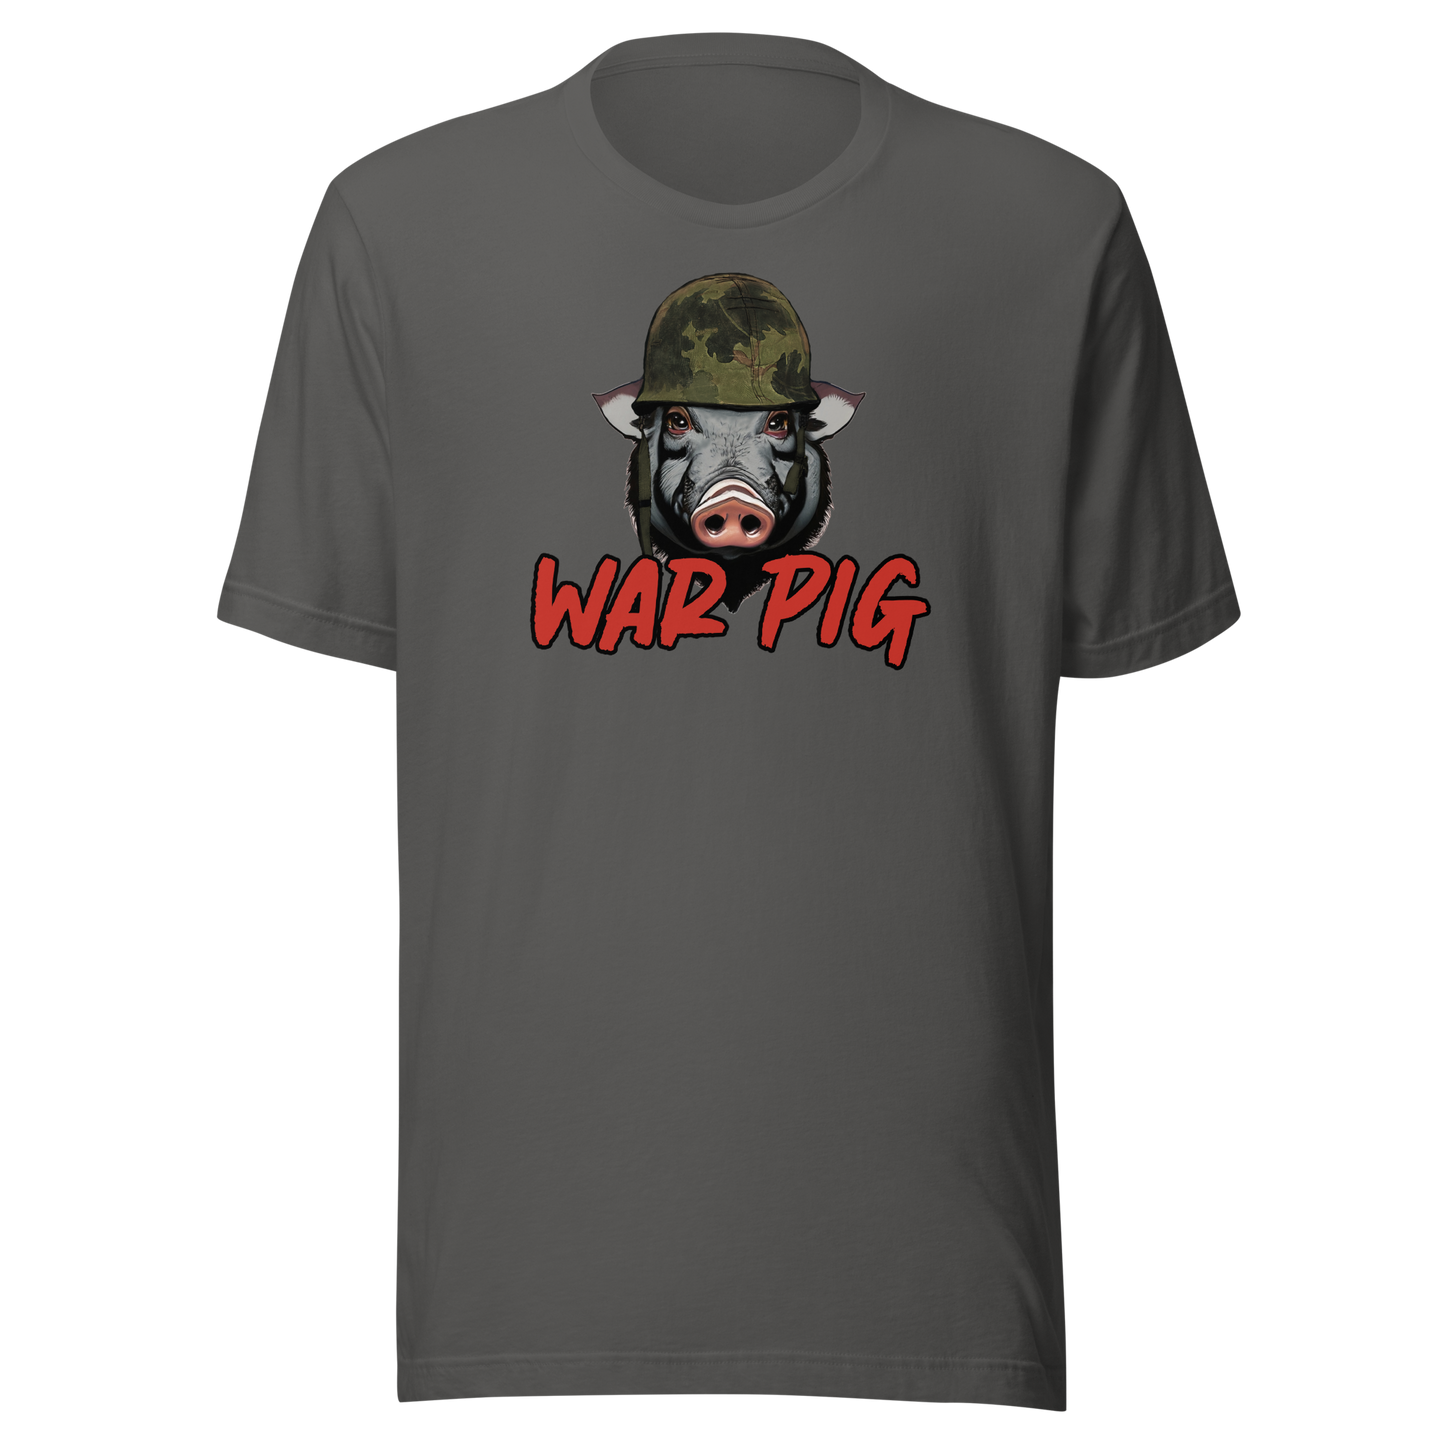 Unisex Short-Sleeve Top: War Pig